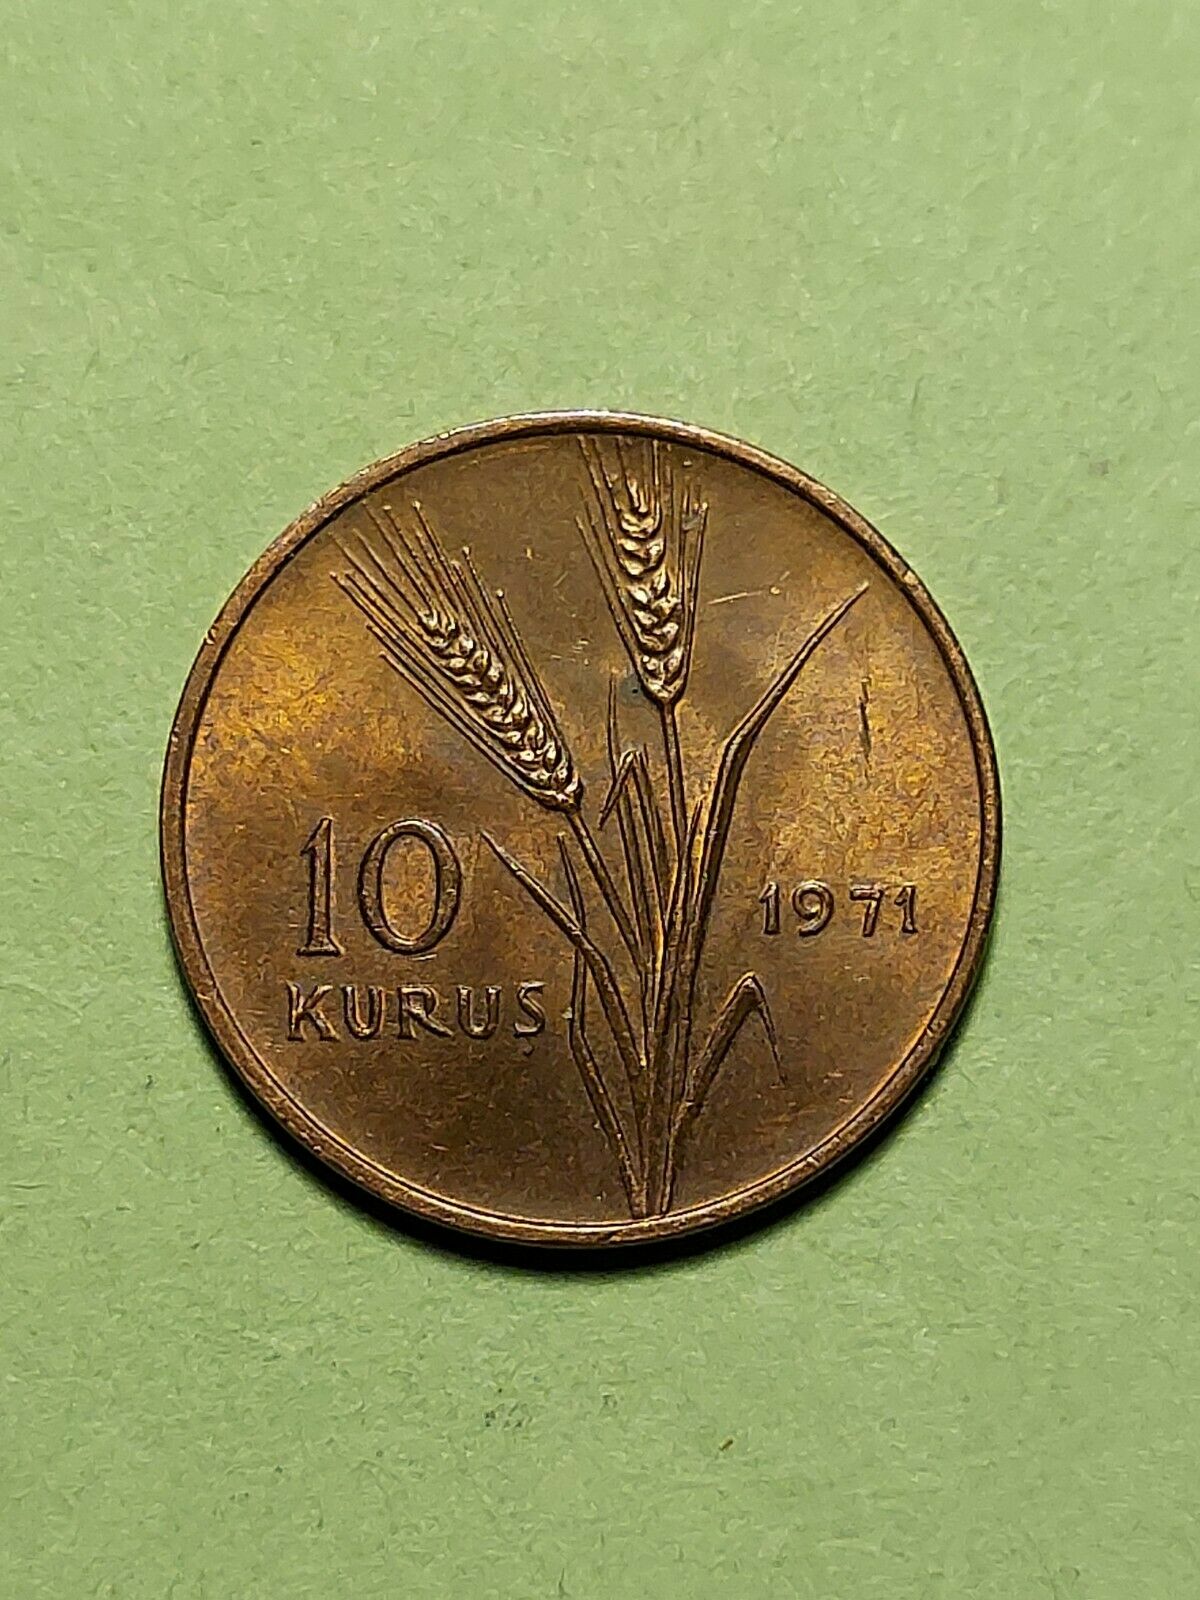 1971 10 Kurus Turkey Coin